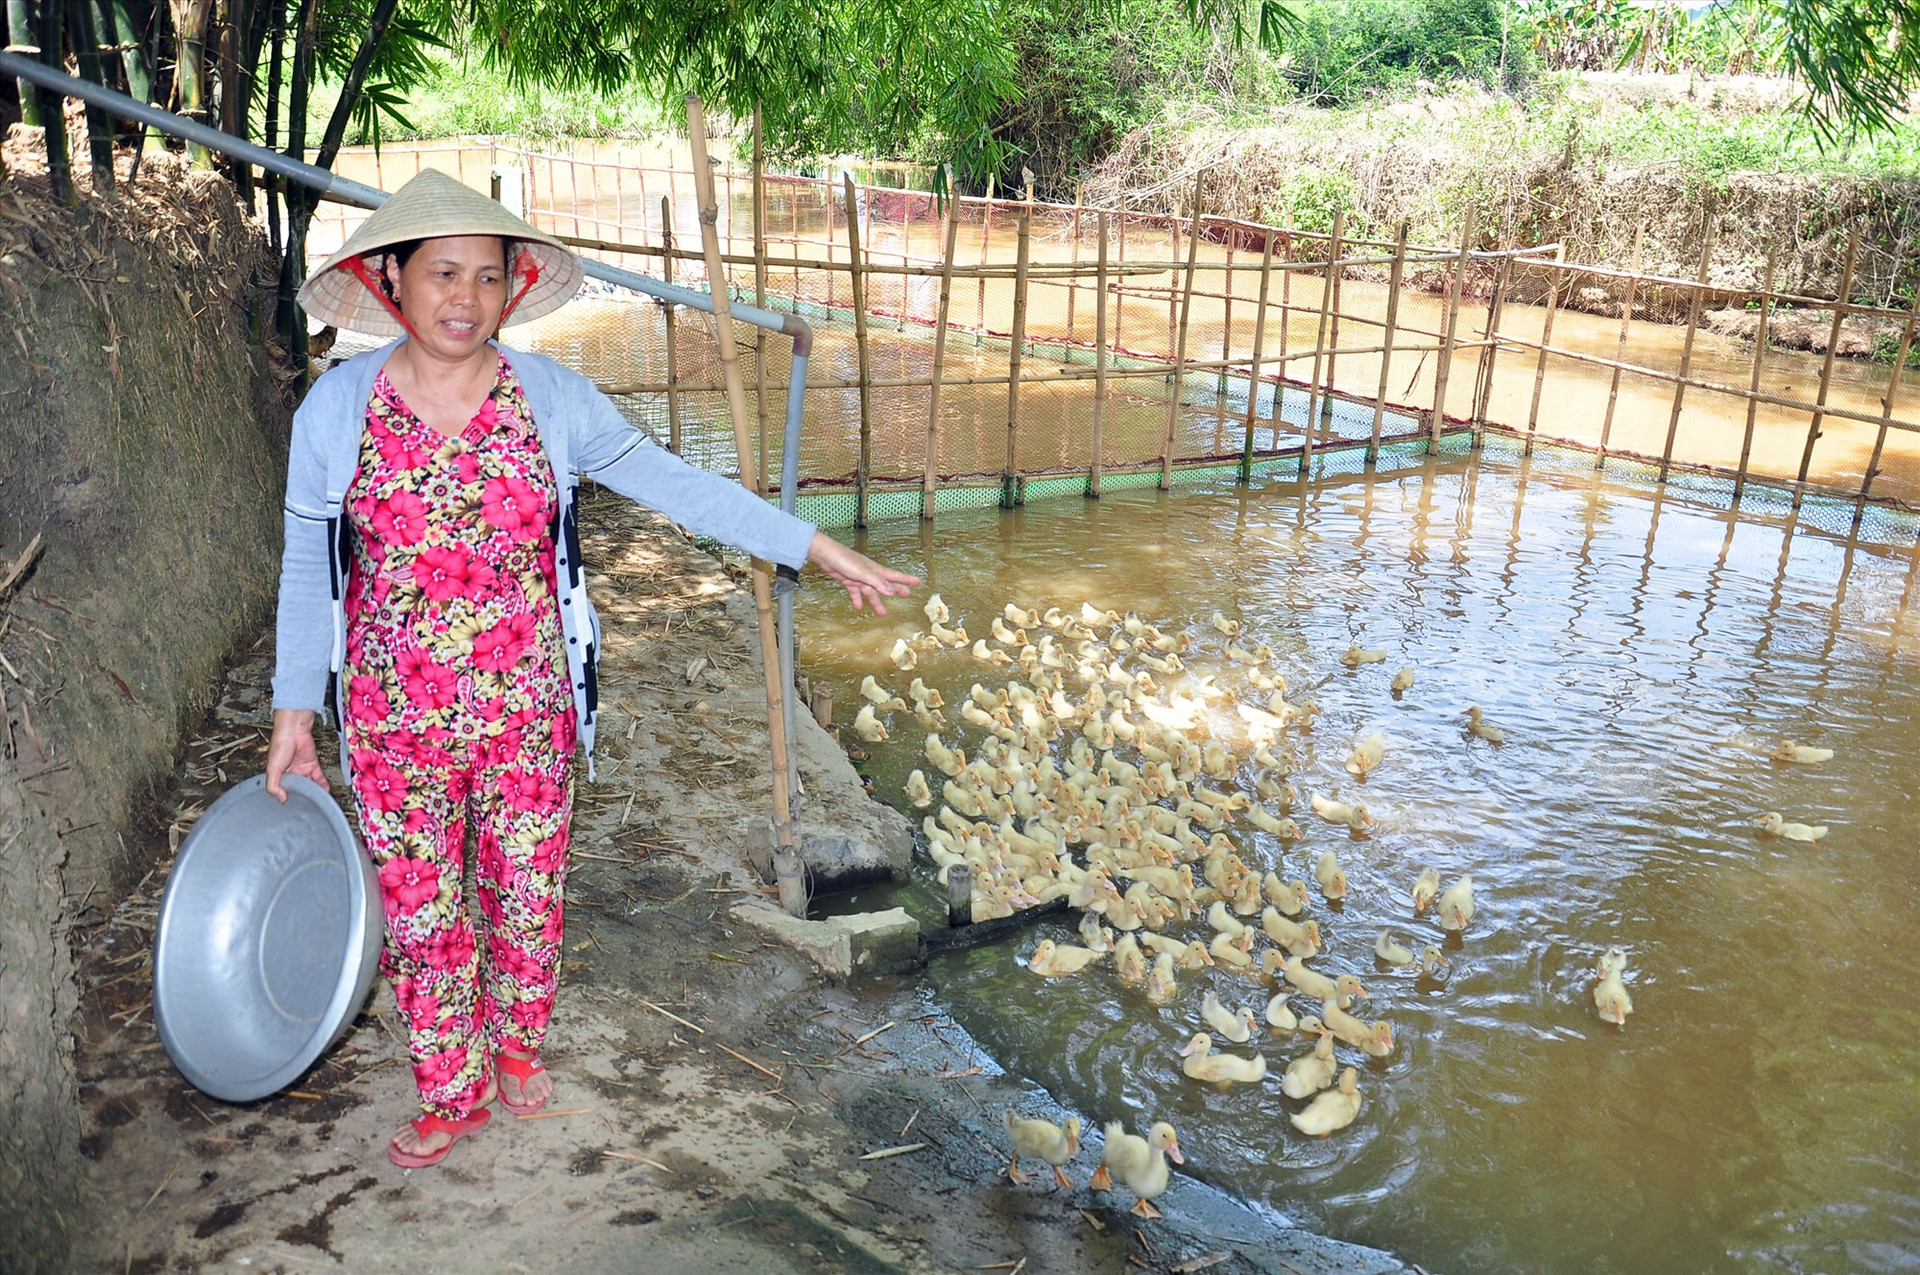 Hộ bà Nguyễn Thị Nhựt (thôn Trung Nam, xã Quế Trung) đã thoát nghèo nhờ mạnh dạn tiếp cận vốn vay ưu đãi để phát triển kinh tế gia trại. Ảnh: S.A